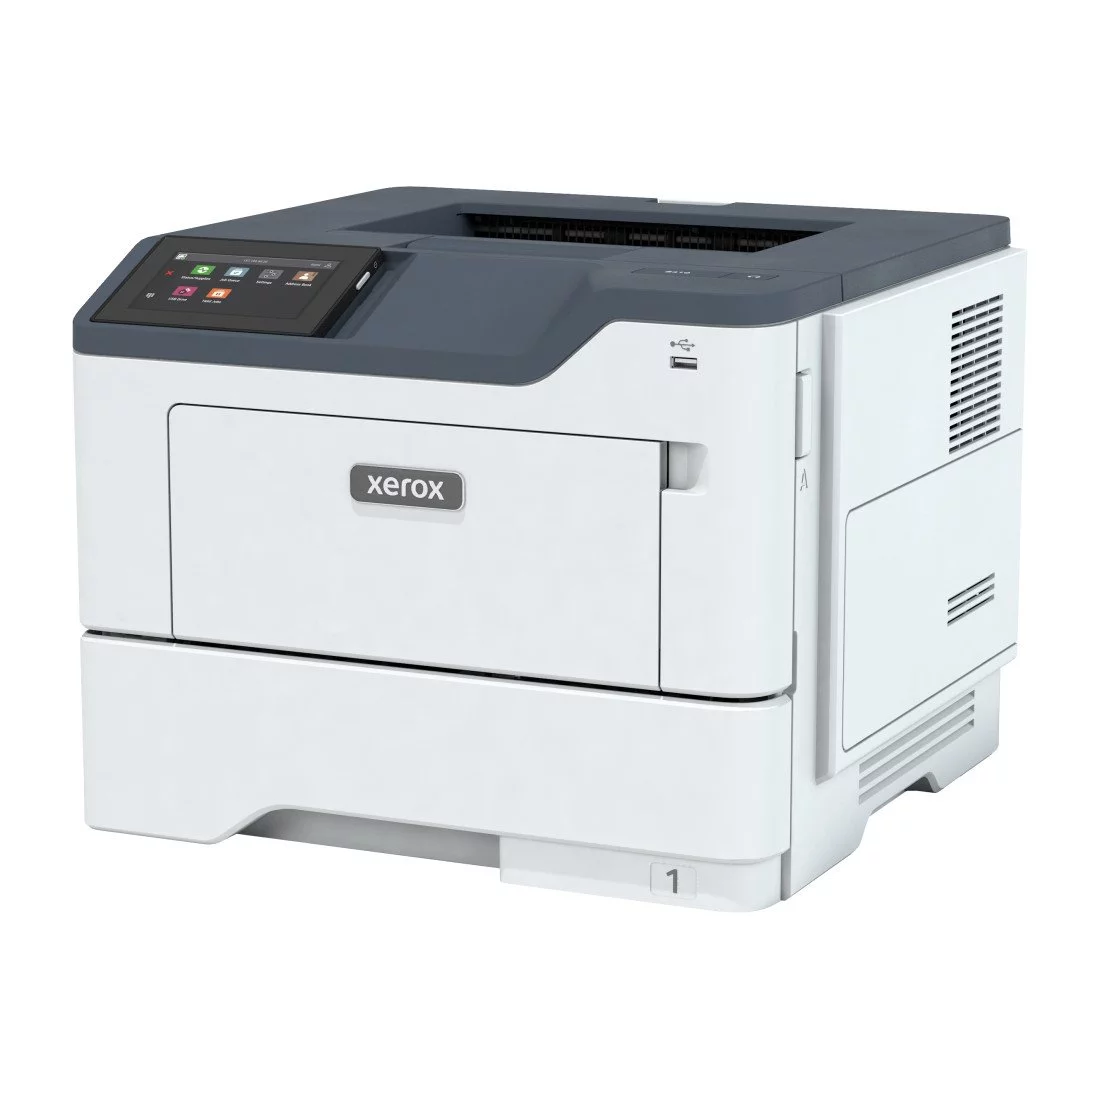 Xerox B310 Imprimante recto verso sans fil A4 40 ppm, PS3 PCL5e/6